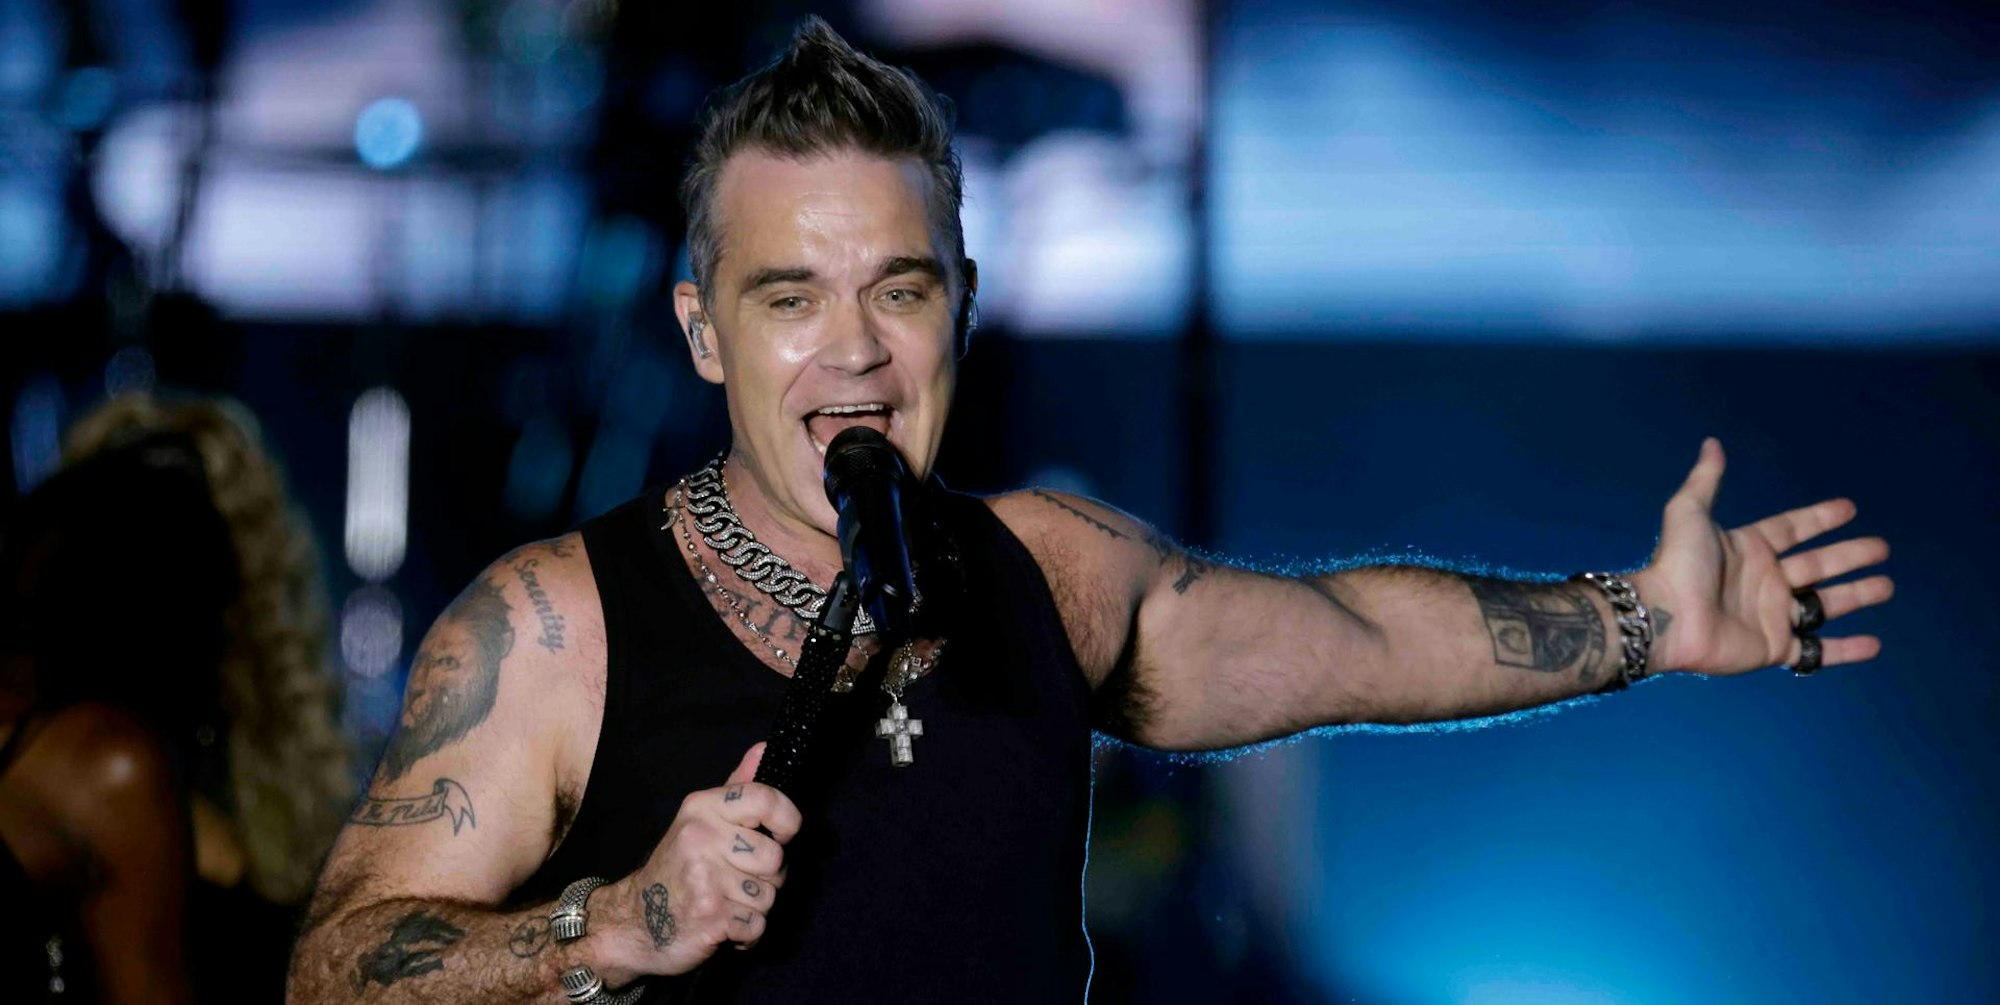 Der britische Sänger Robbie Williams am 30. August 2022 auf der Bühne im Bonner Hofgarten. Er singt ins Standmikrofon, trägt ein Muscle-Shirt und hat einen Arm ausgestreckt.